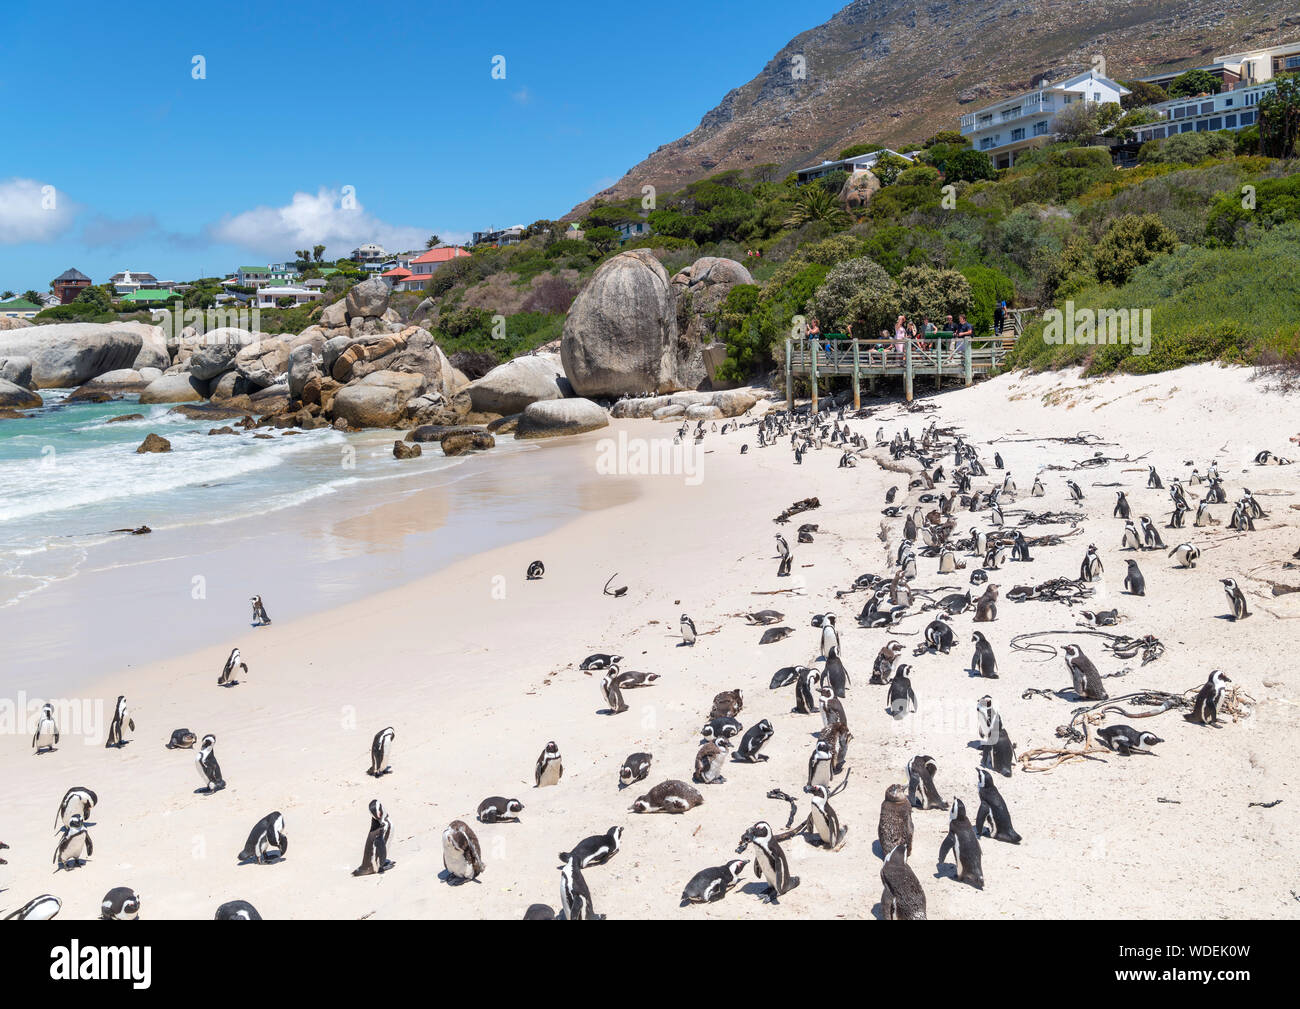 Colonie de pingouins africains (Spheniscus demersus) à la plage de Boulders, Simon's Town, Cape Town, Western Cape, Afrique du Sud Banque D'Images